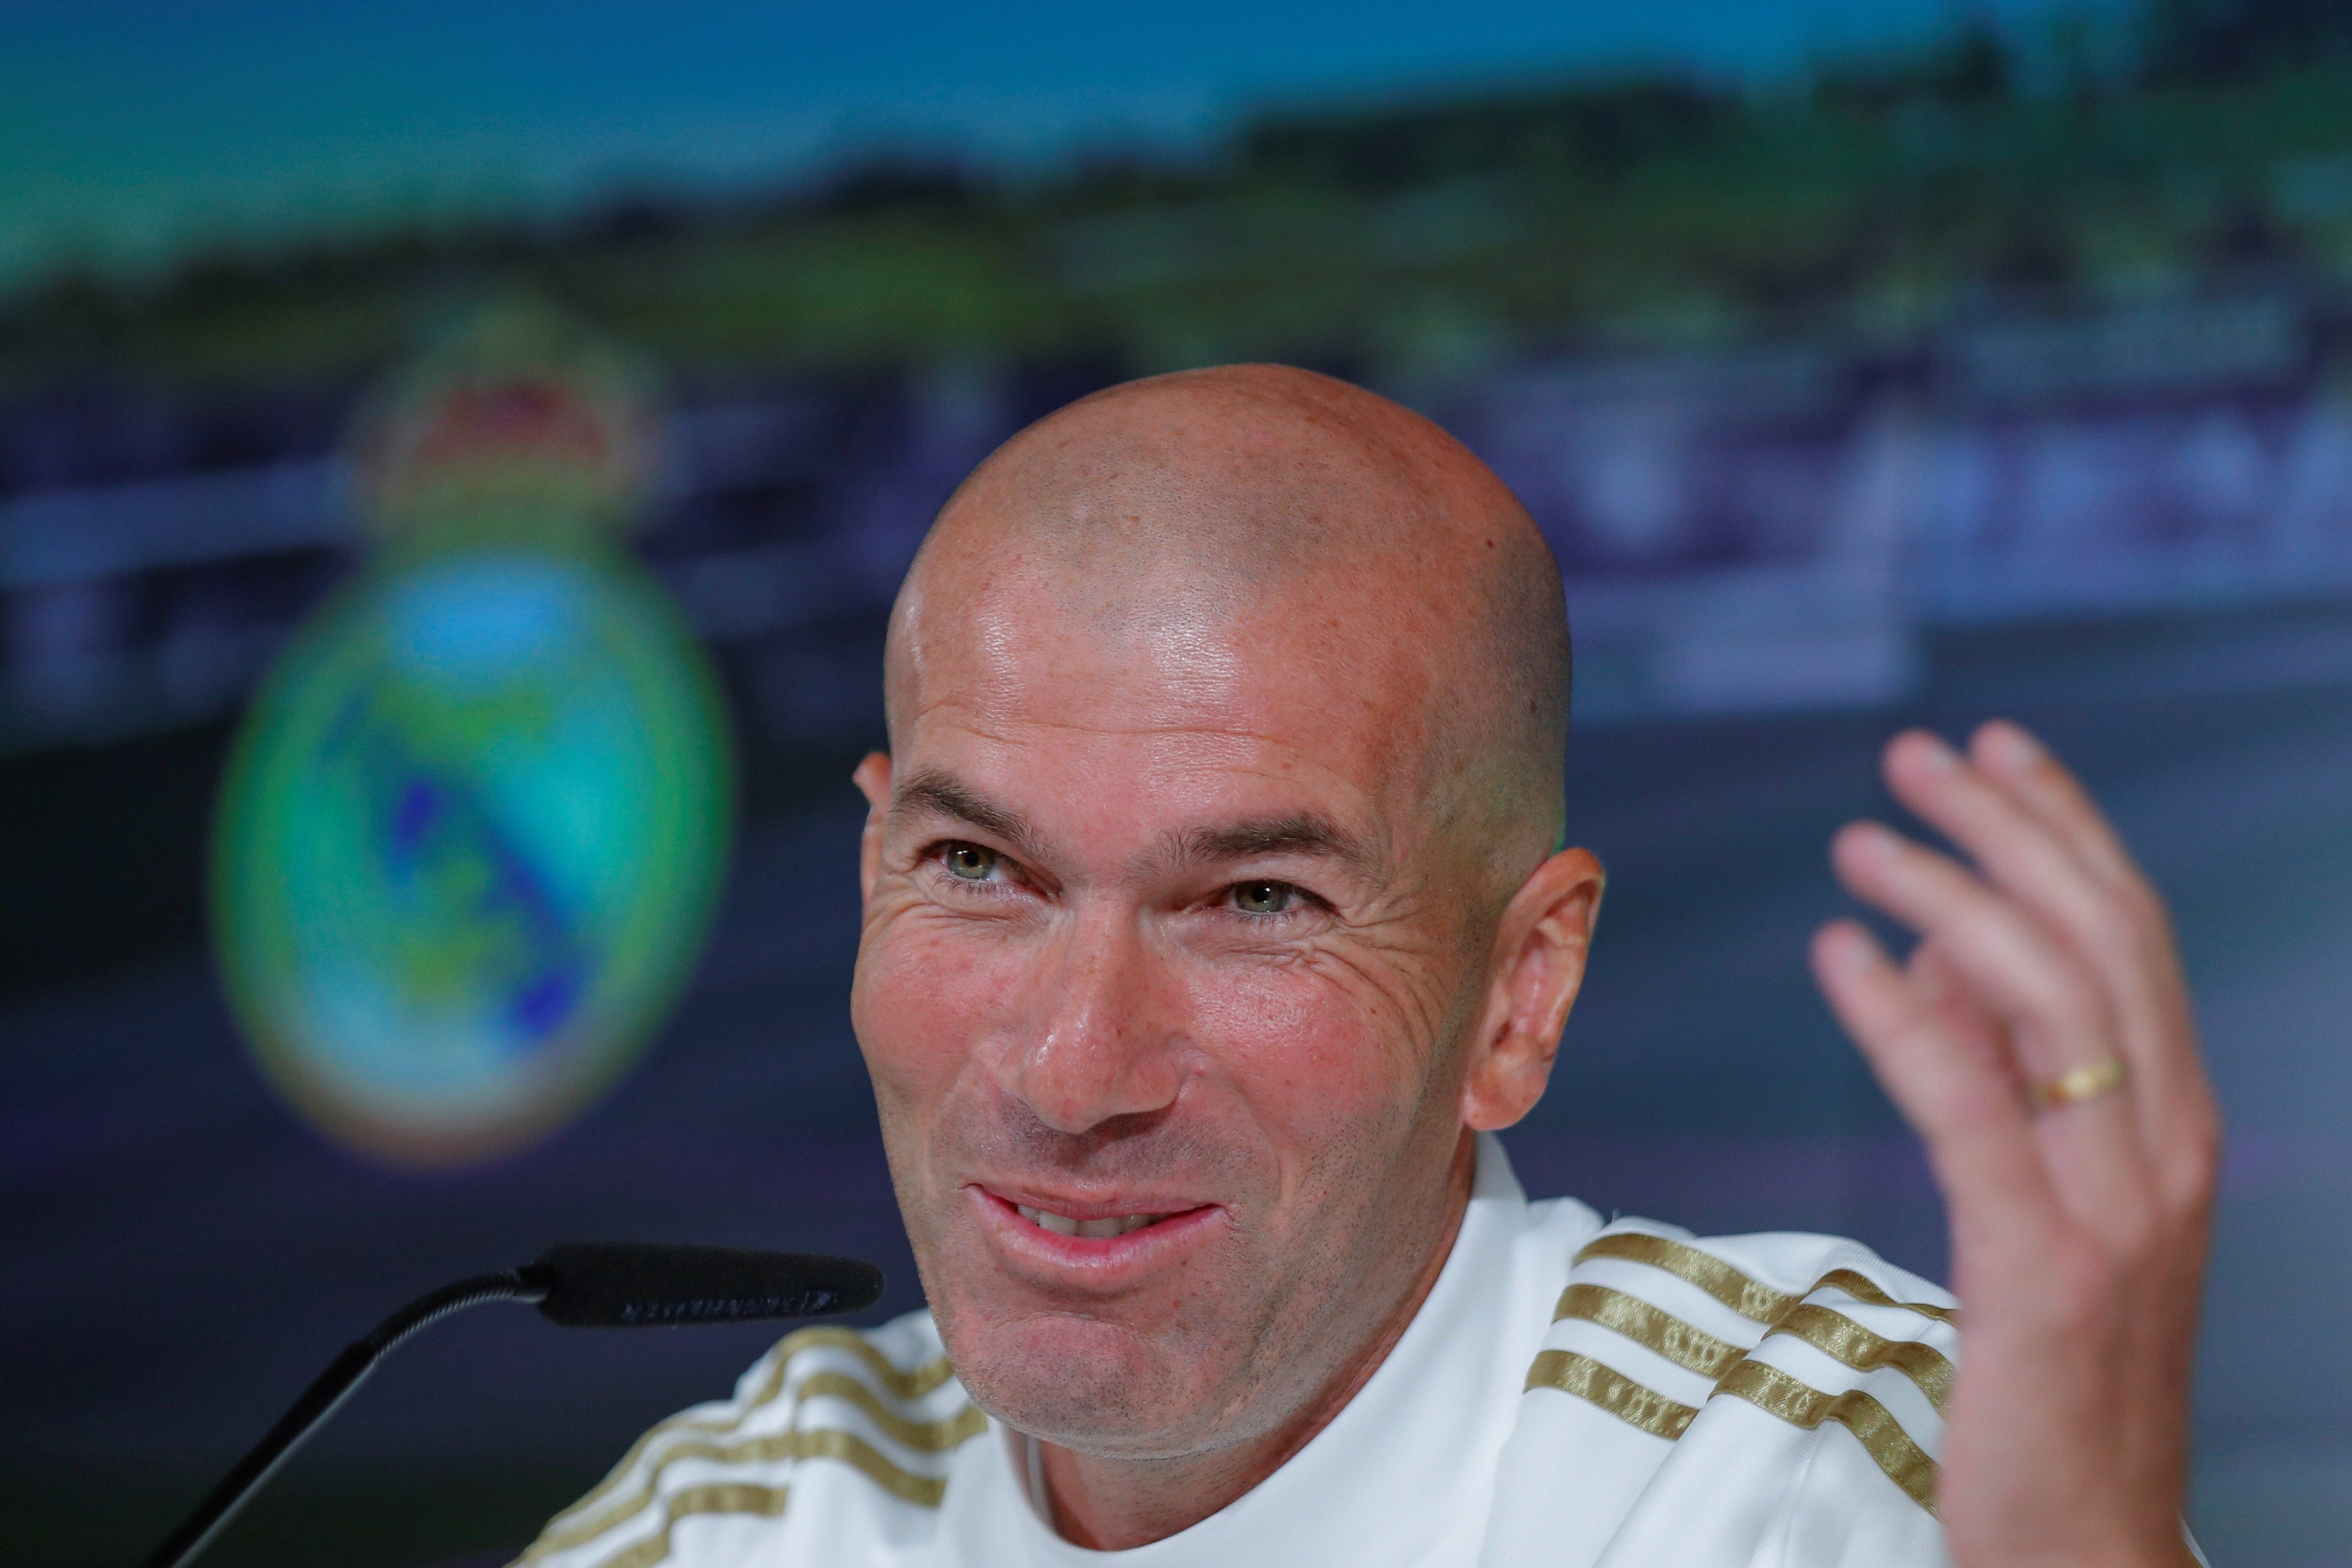 Zinedine Zidane dice que lo importante es llegar bien al Clásico, sin importar la fecha. (Foto Prensa Libre: EFE)